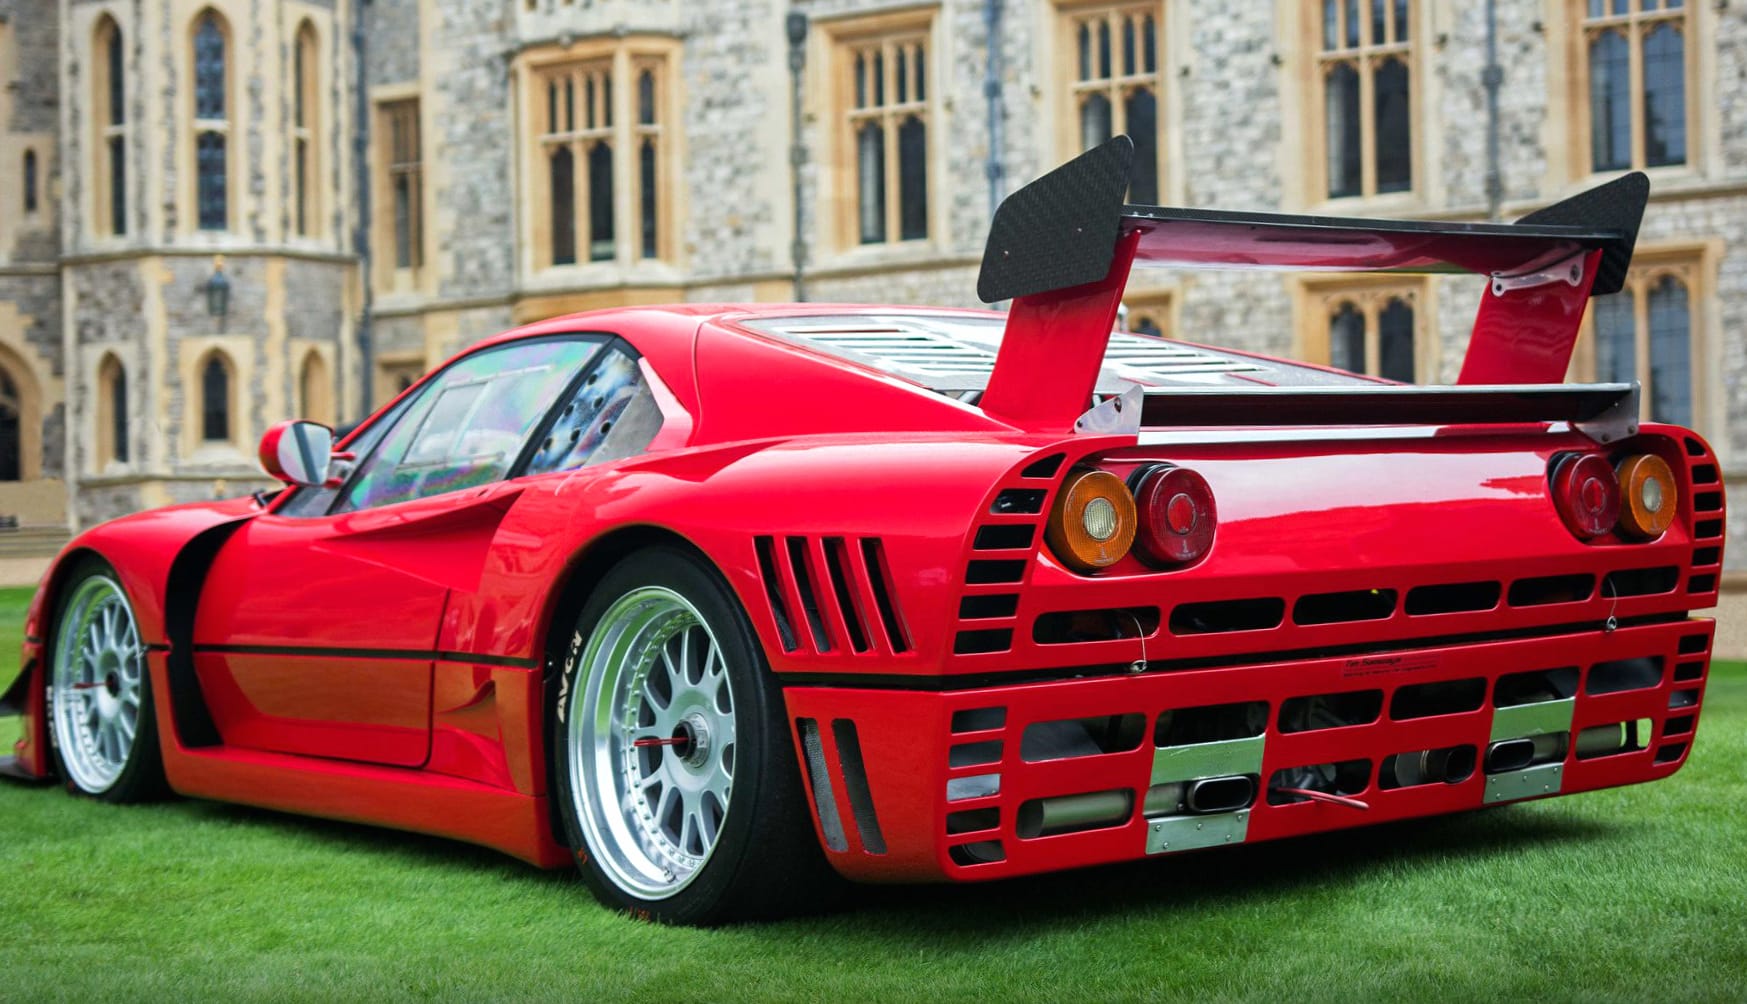 Ferrari GTO Evoluzione at 1024 x 768 size wallpapers HD quality